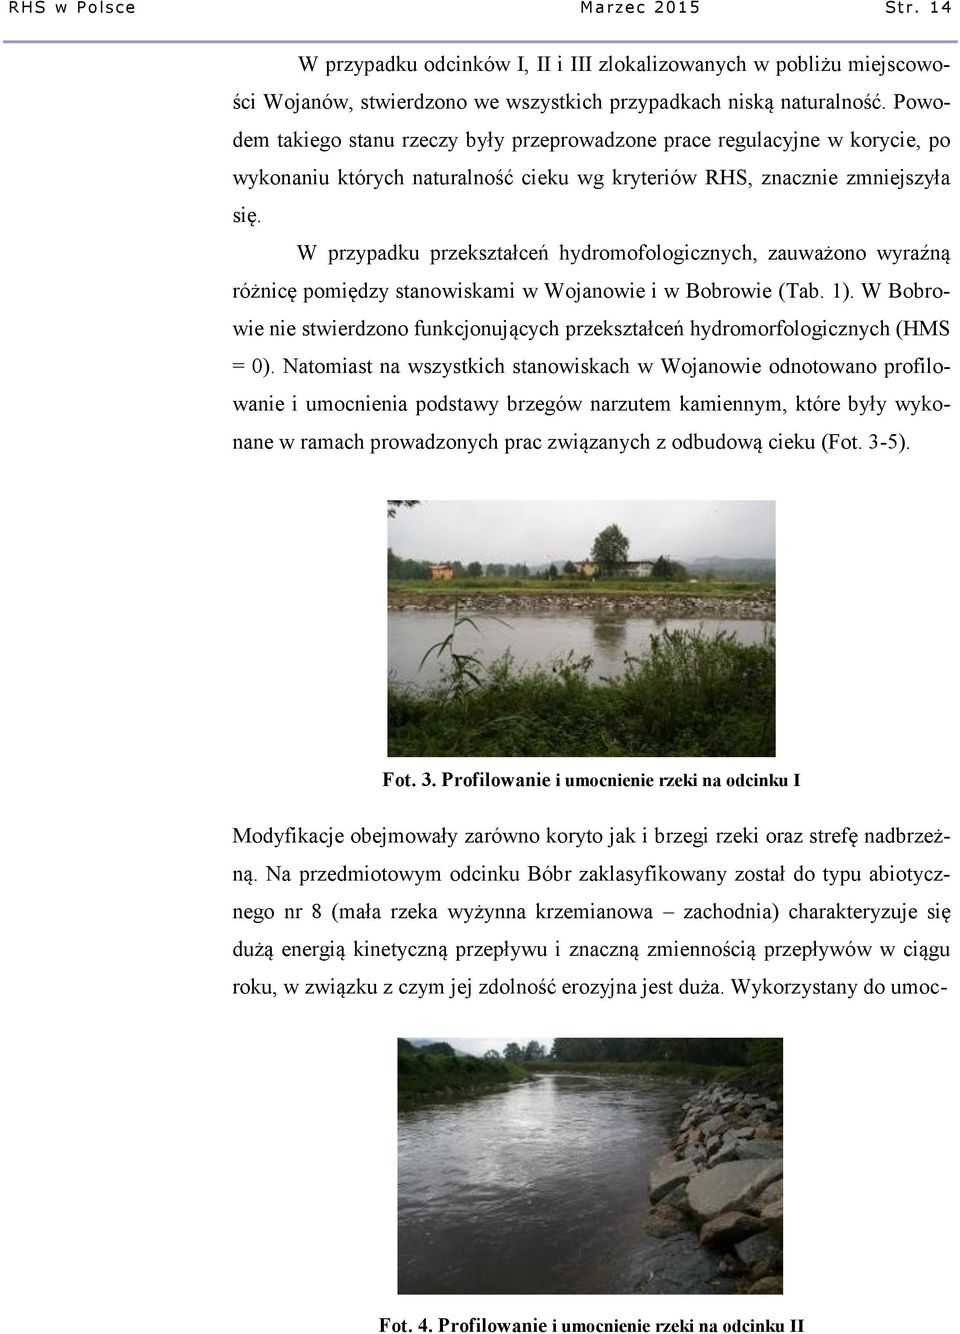 W przypadku przekształceń hydromofologicznych, zauważono wyraźną różnicę pomiędzy stanowiskami w Wojanowie i w Bobrowie (Tab. 1).